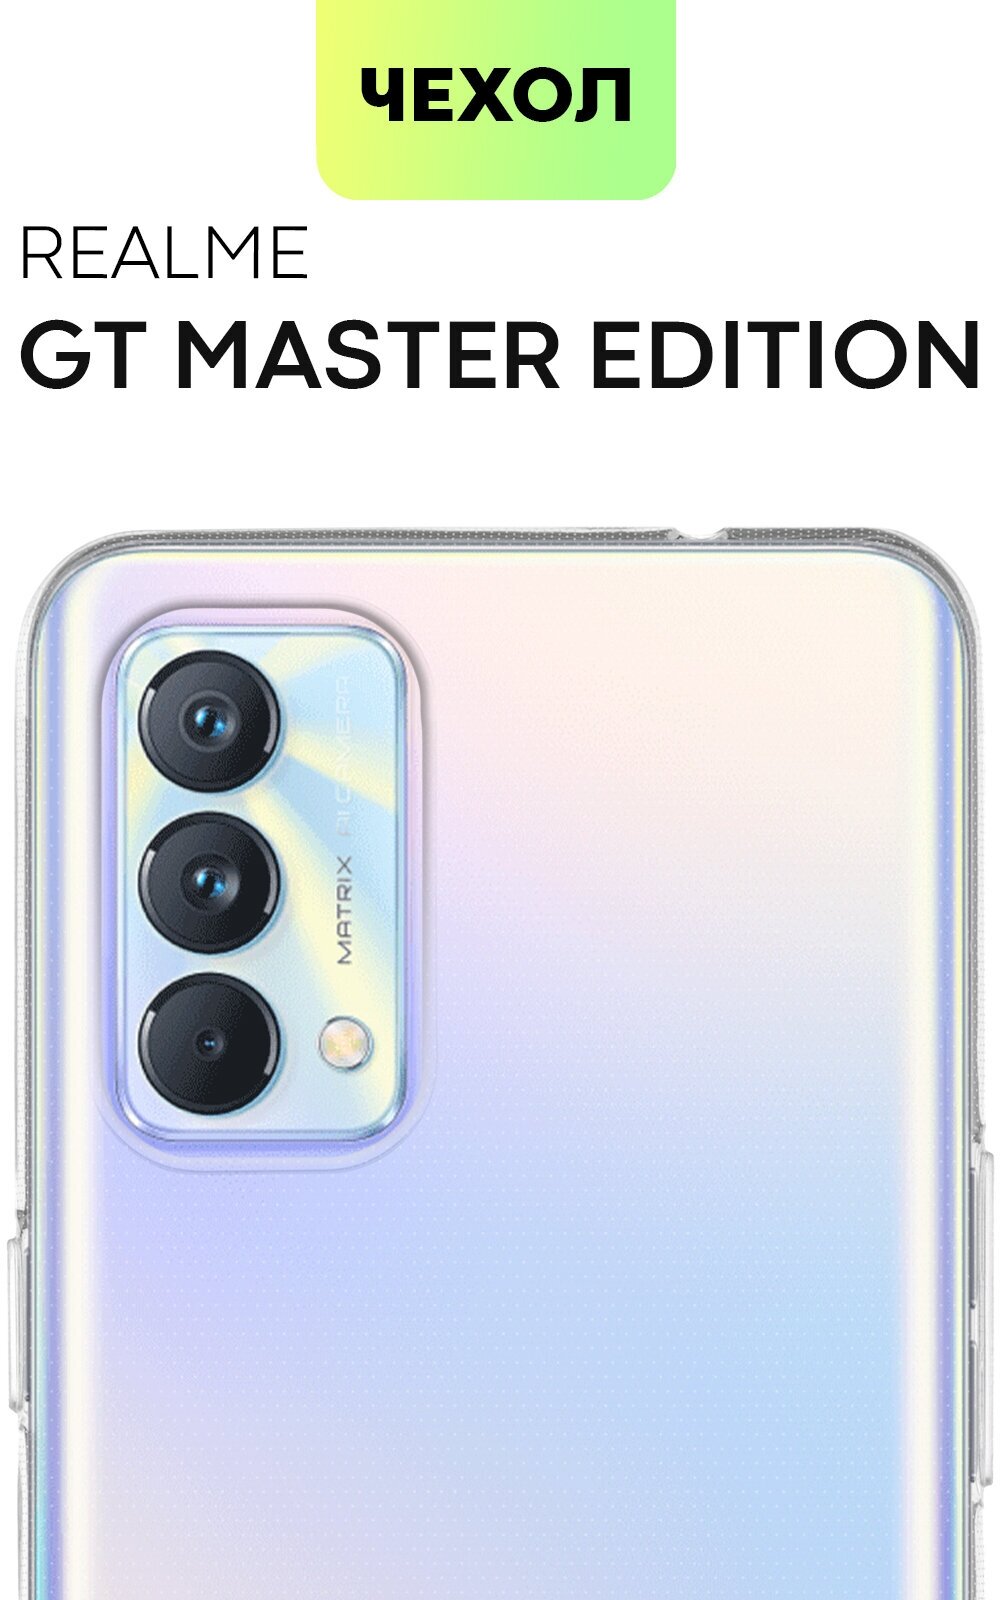 Чехол для Realme GT Master Edition (Реалми ГТ, Реалм ГТ) силиконовая накладка с бортиком (защита) вокруг модуля камер, чехол BROSCORP прозрачный